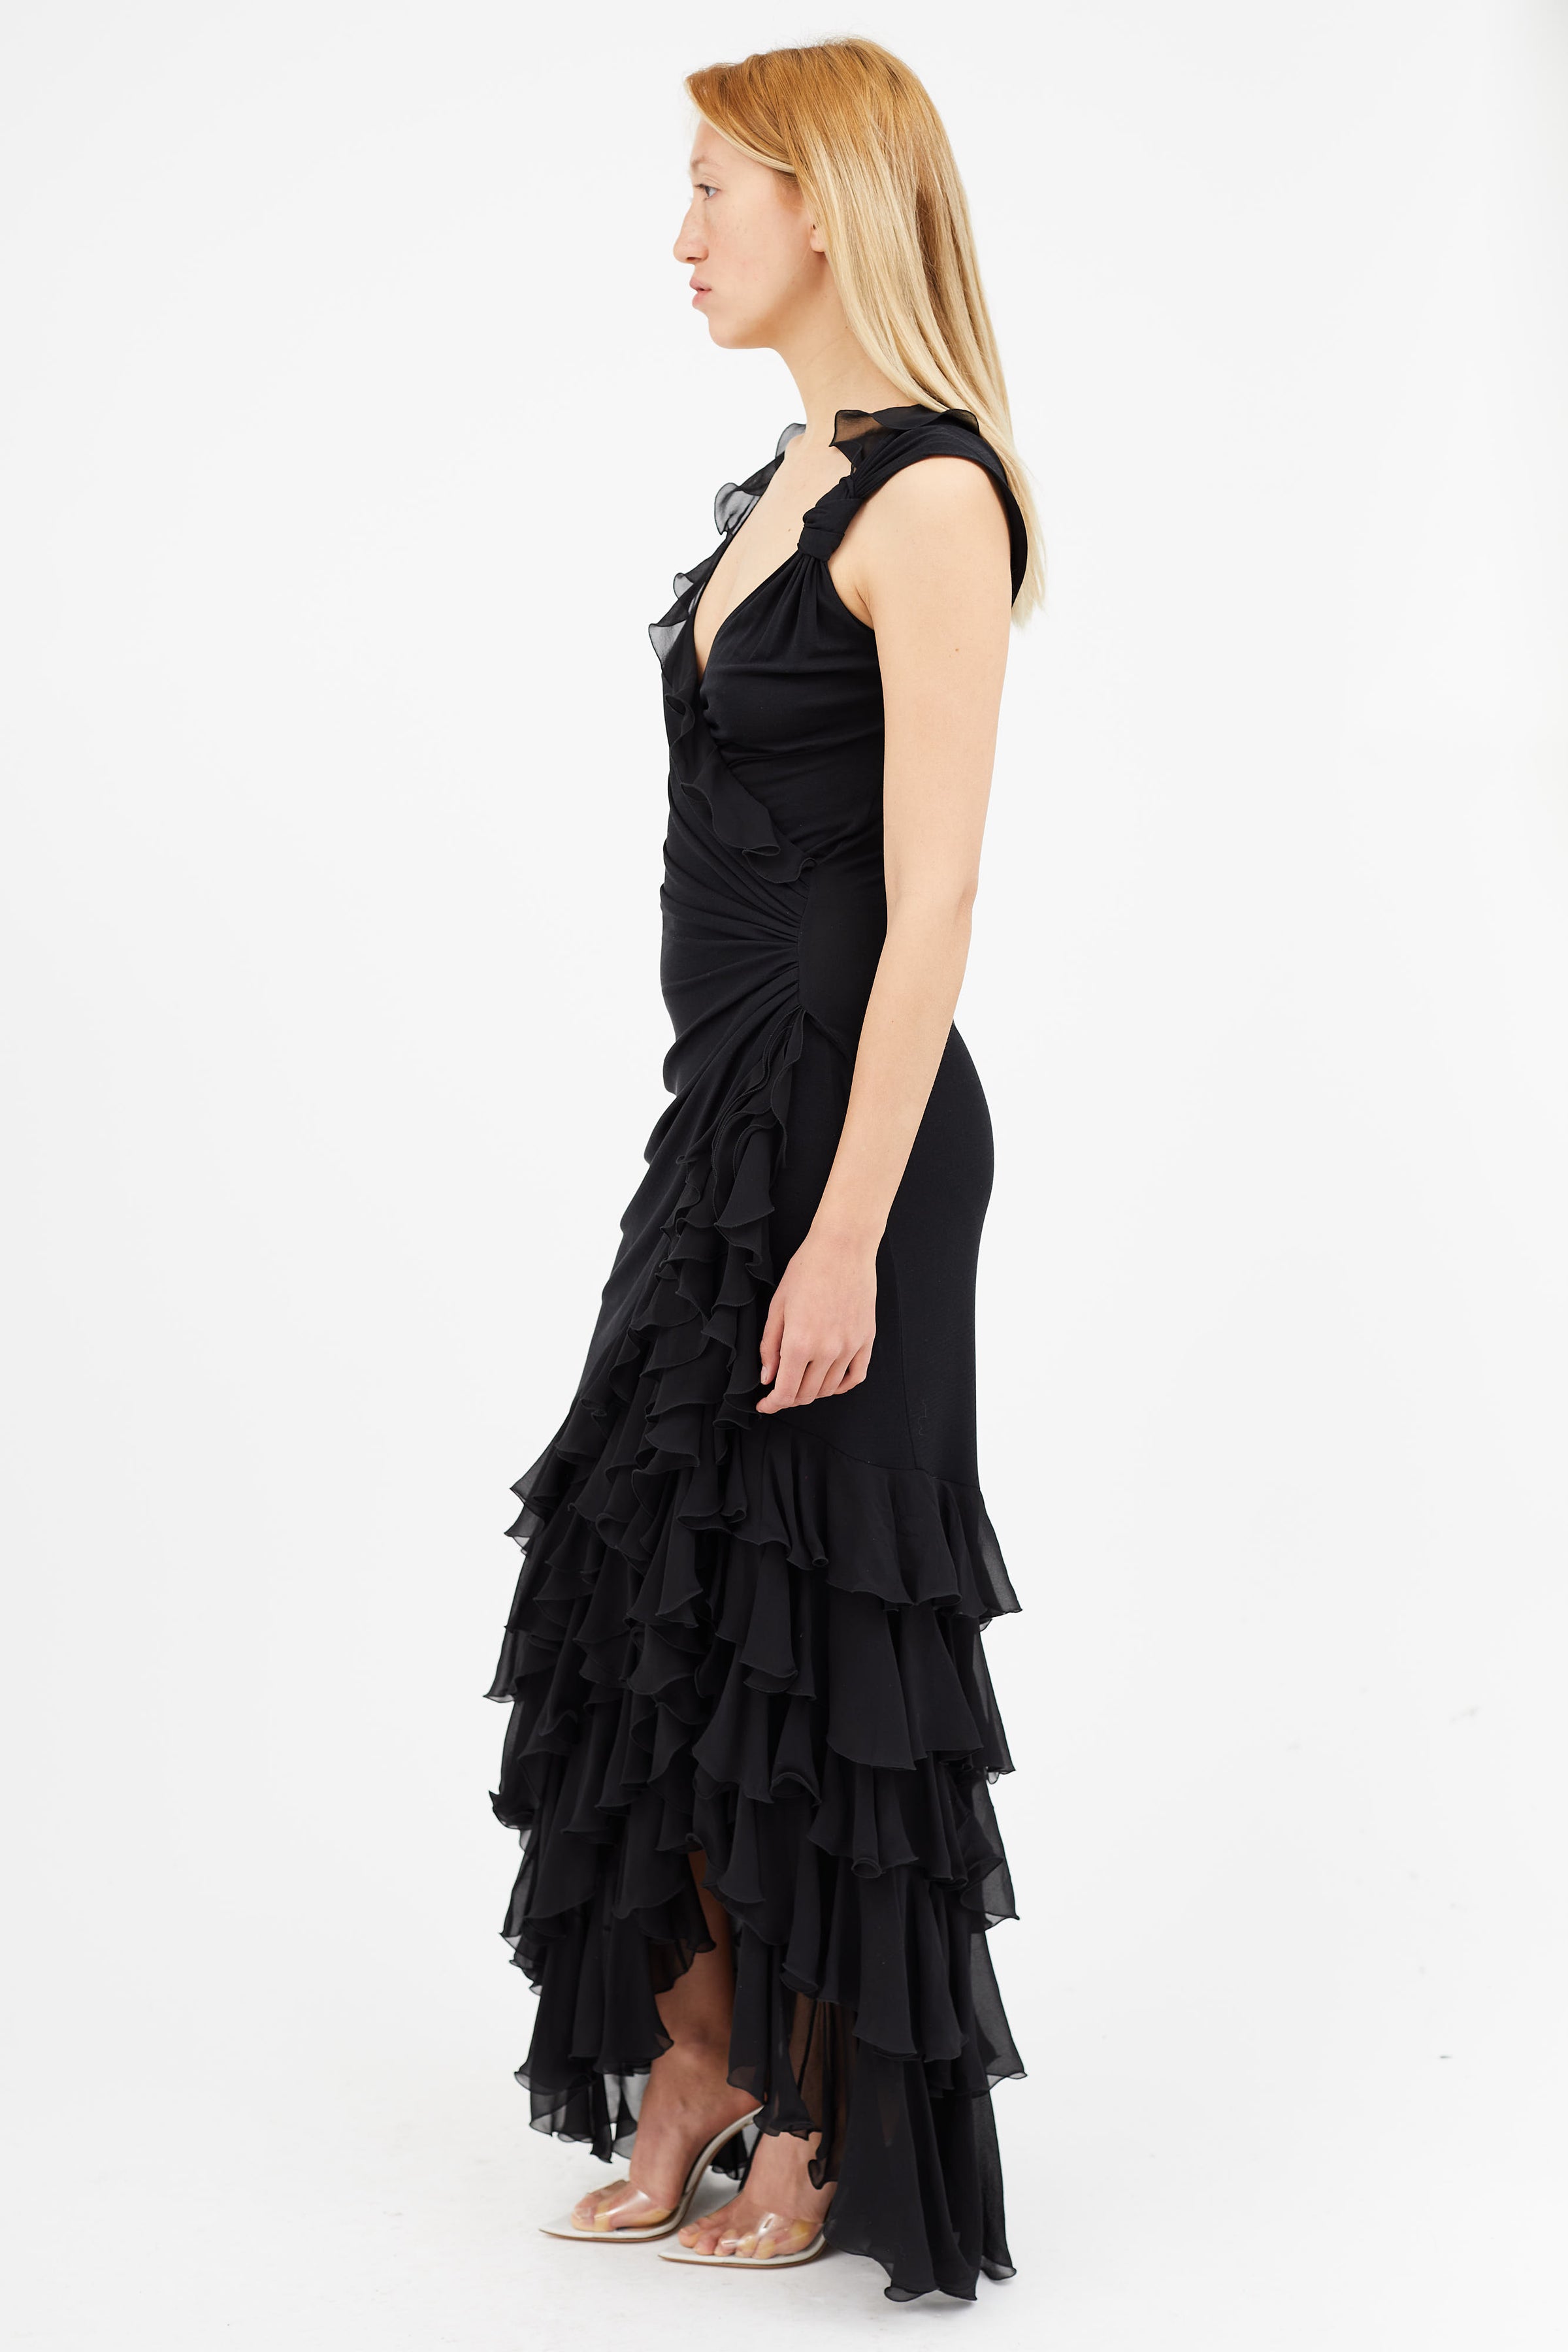 Black Maxi Dress - Black Ruffled Maxi Dress - Tiered Maxi Dress